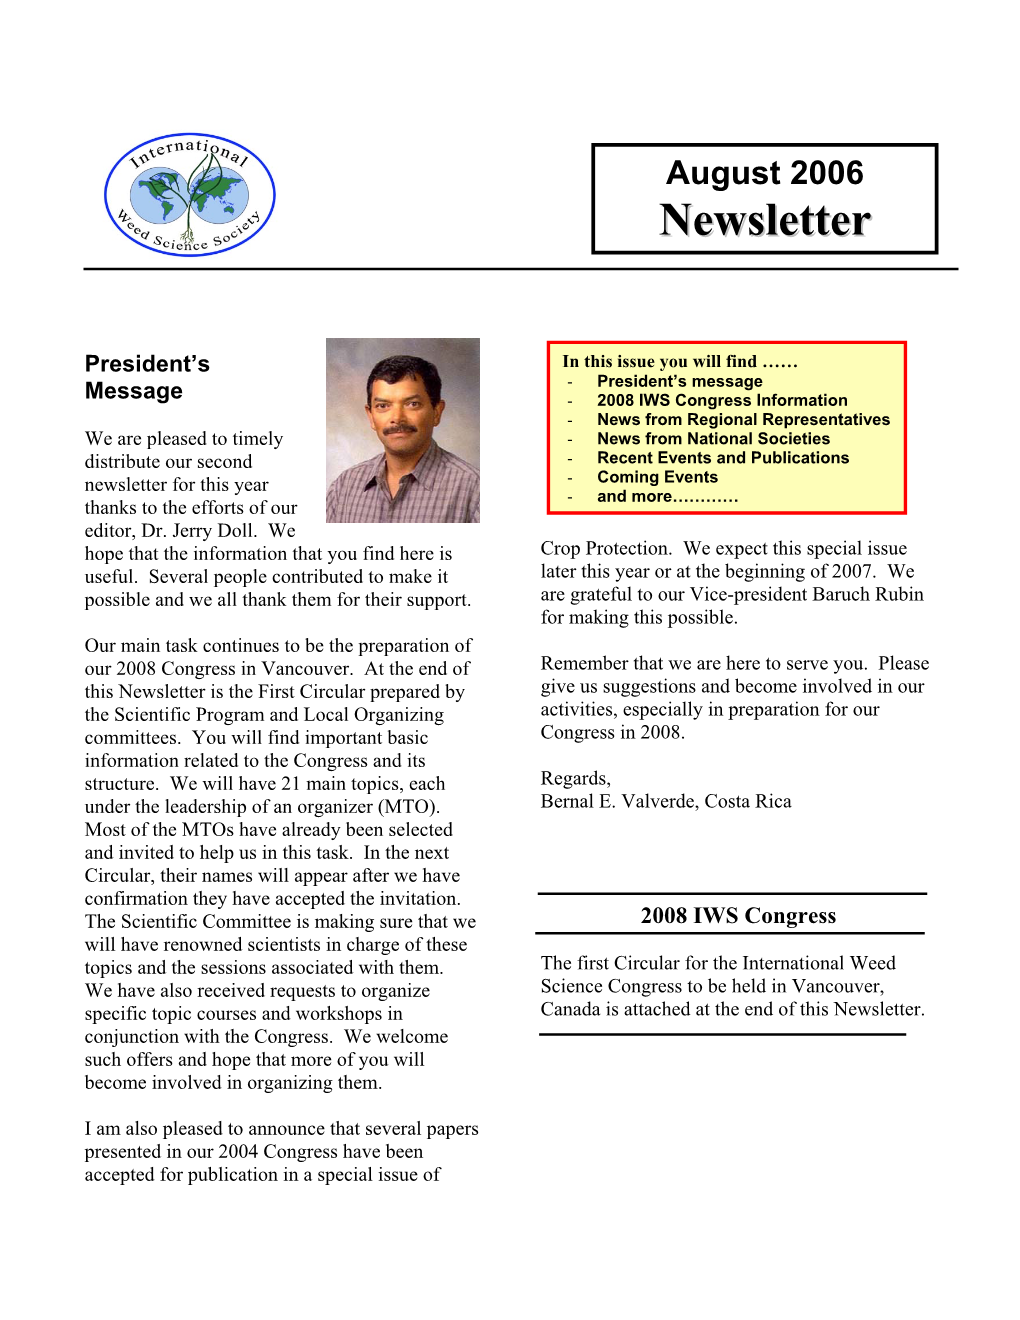 IWSS Newsletter August 2006